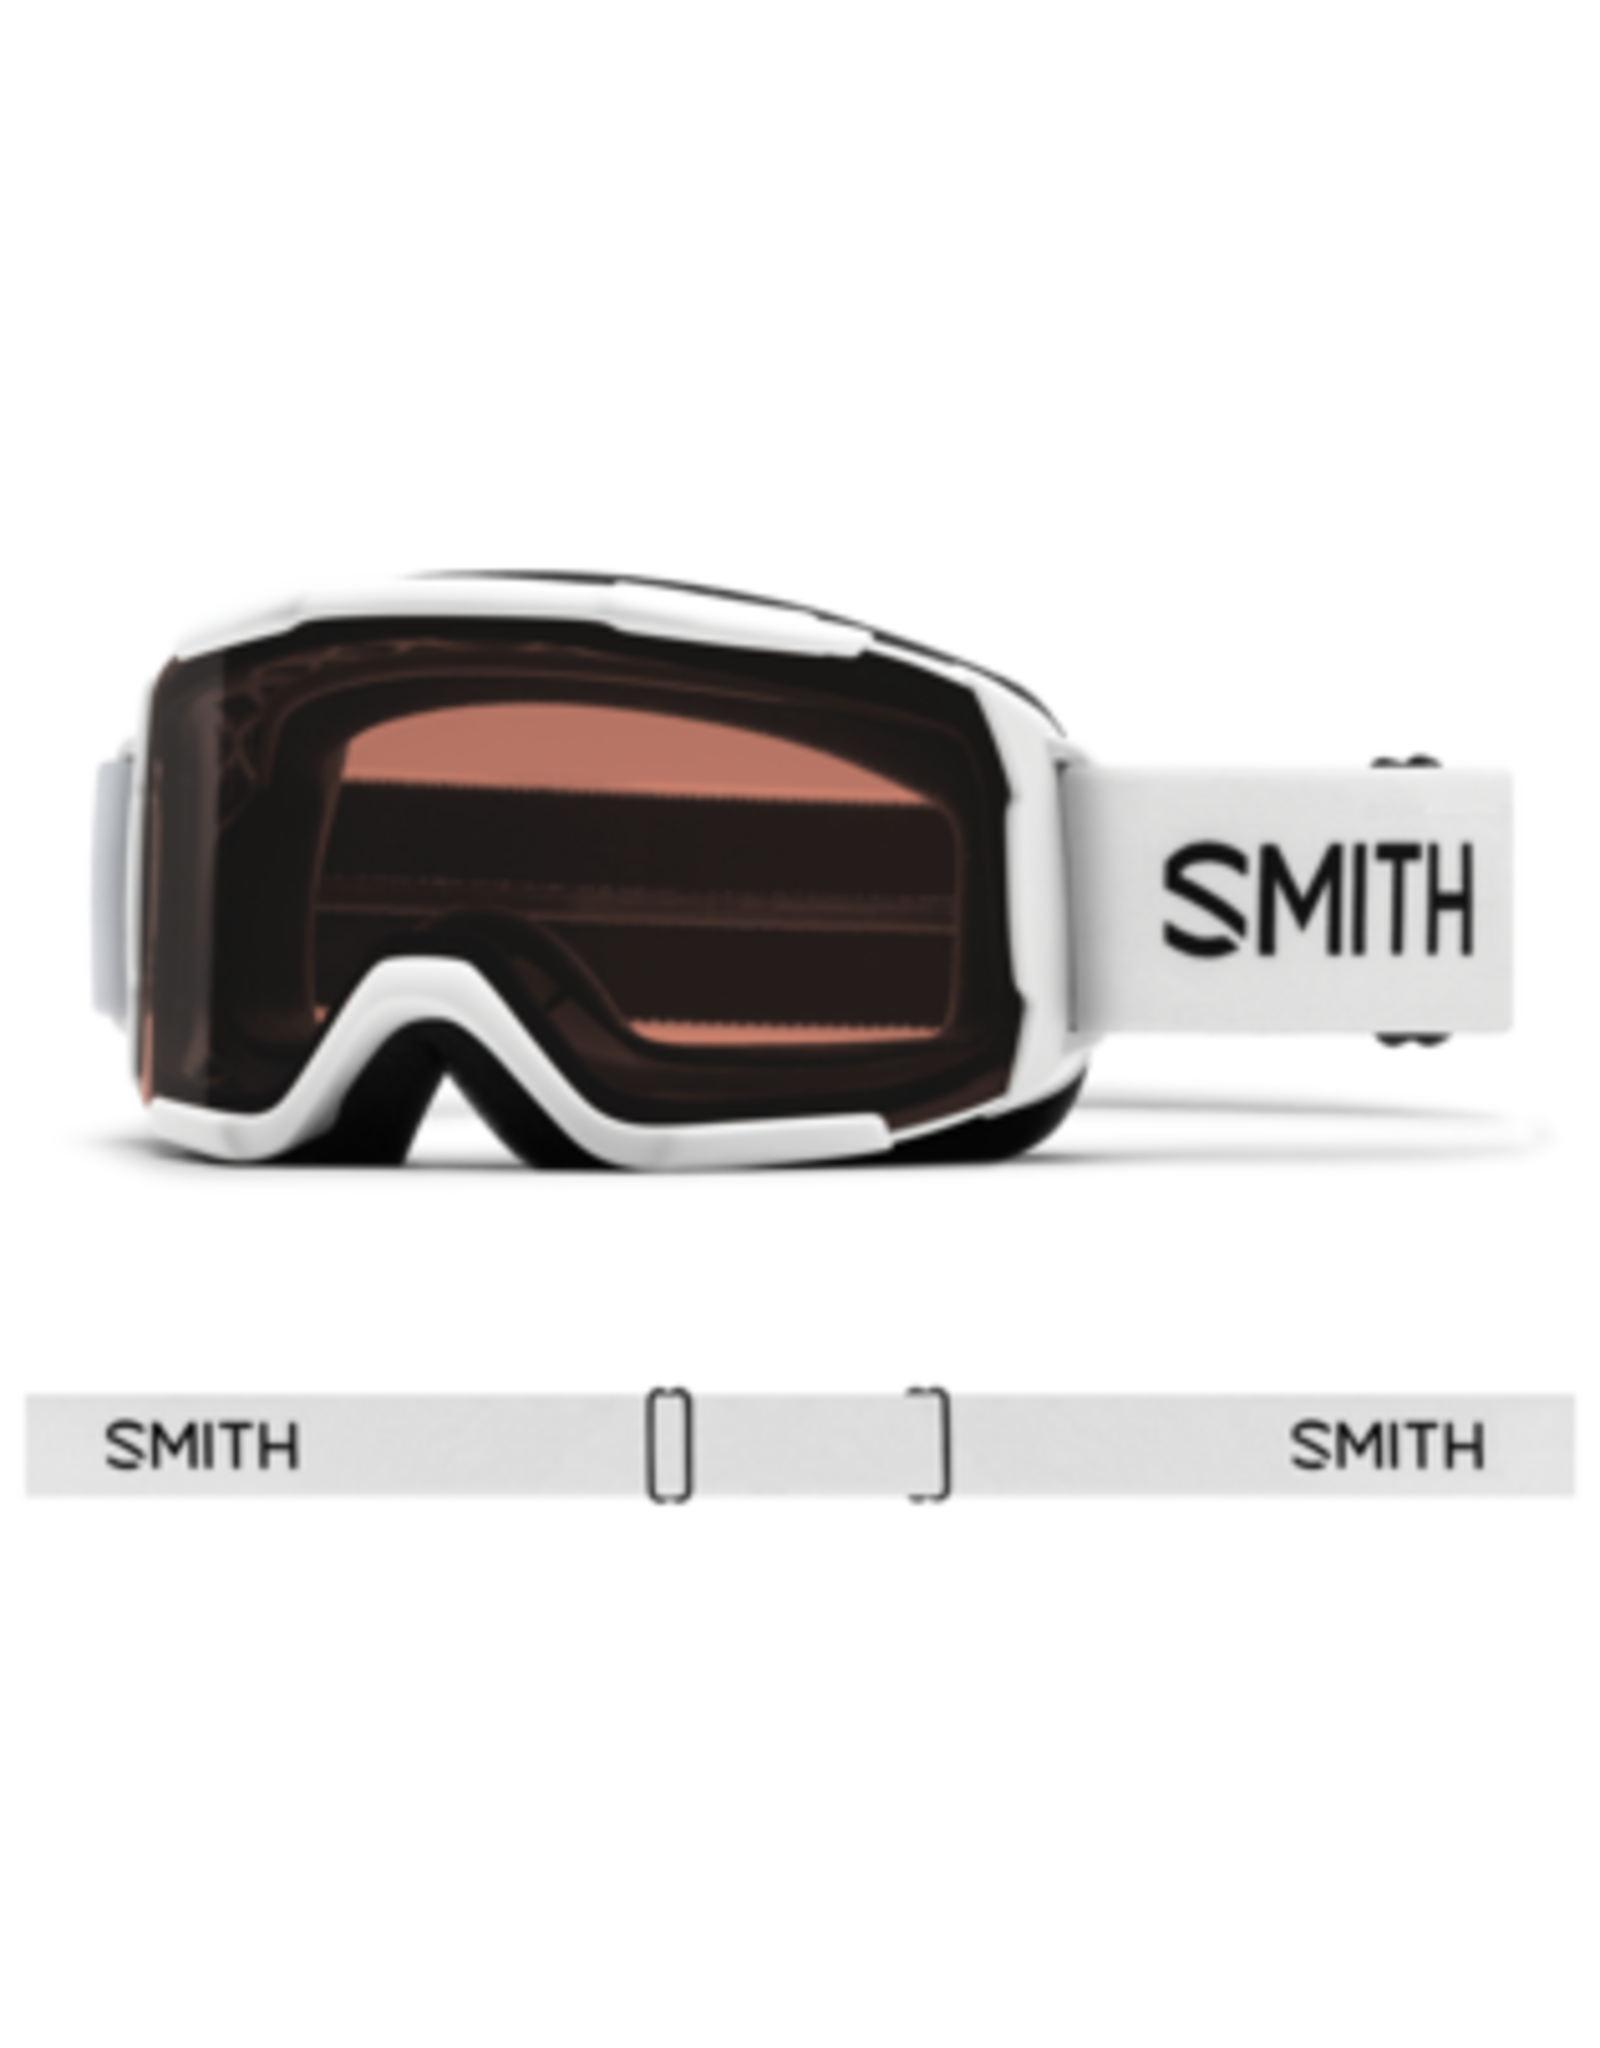 Smith Optics GOGGLE SMITH DAREDEVIL